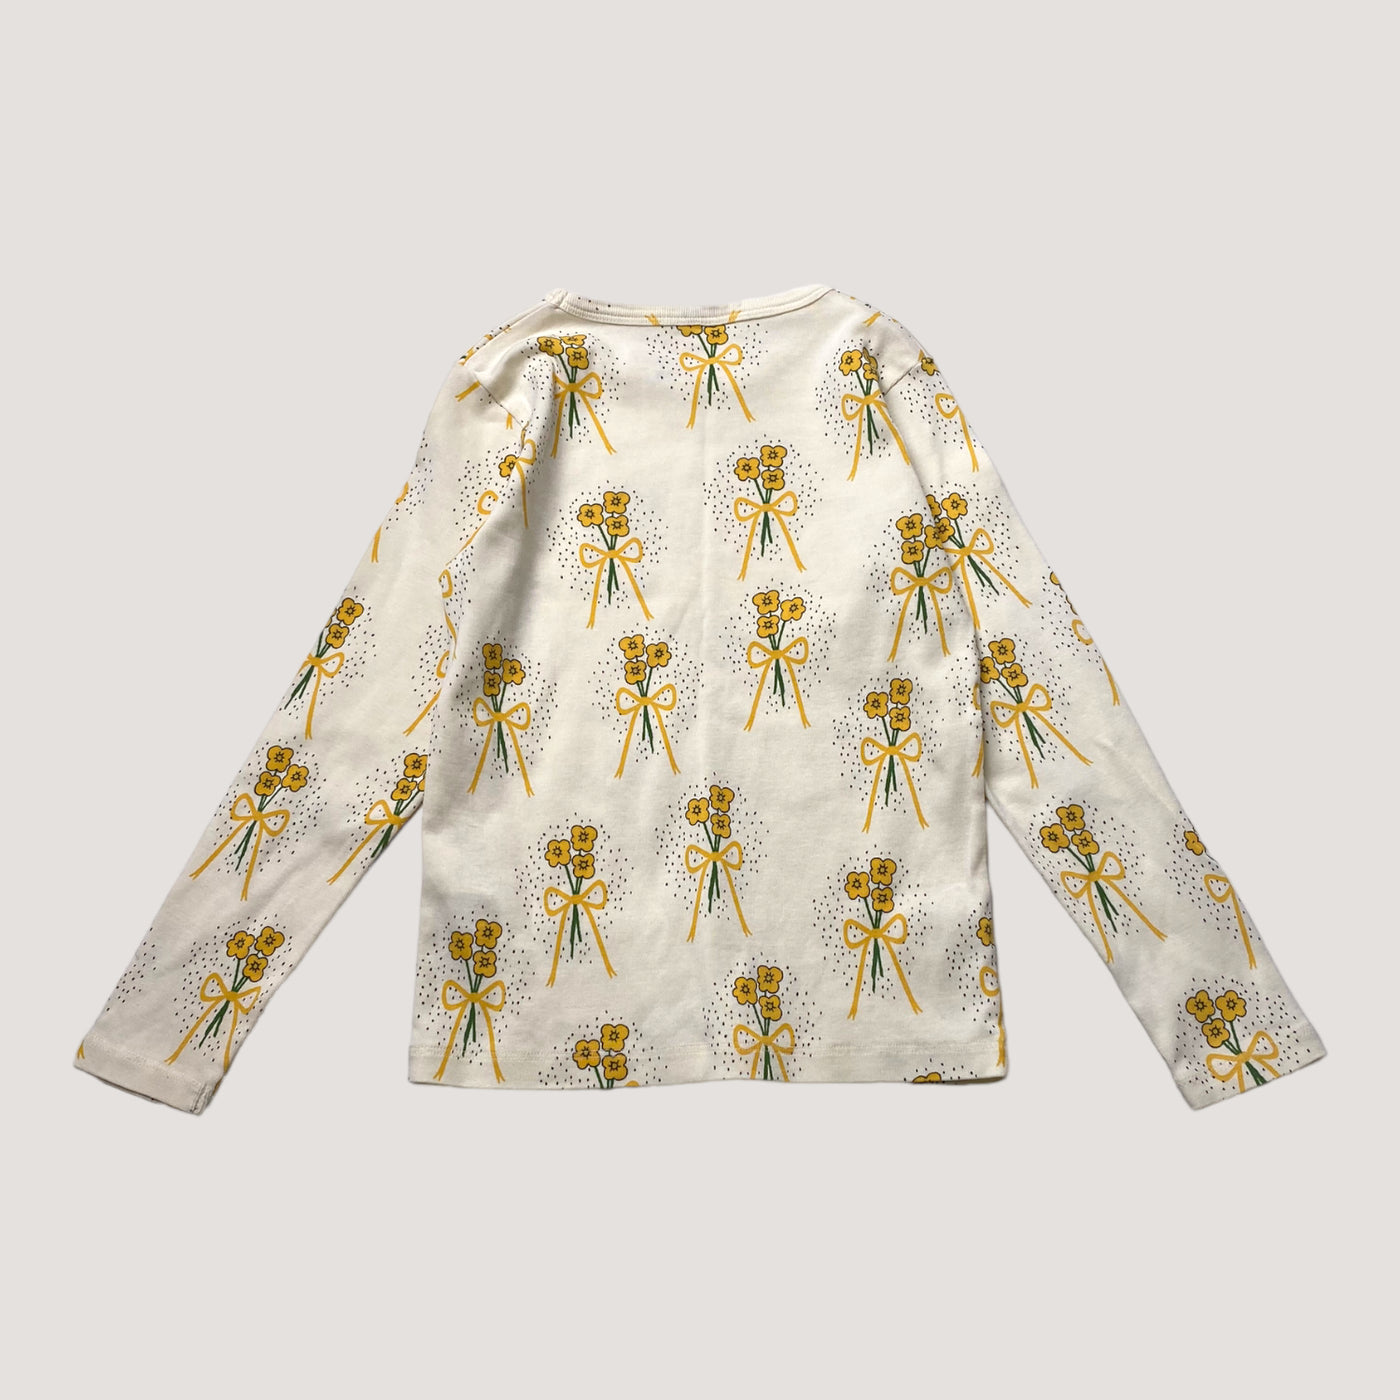 Mini Rodini shirt, flowers | 116/122cm